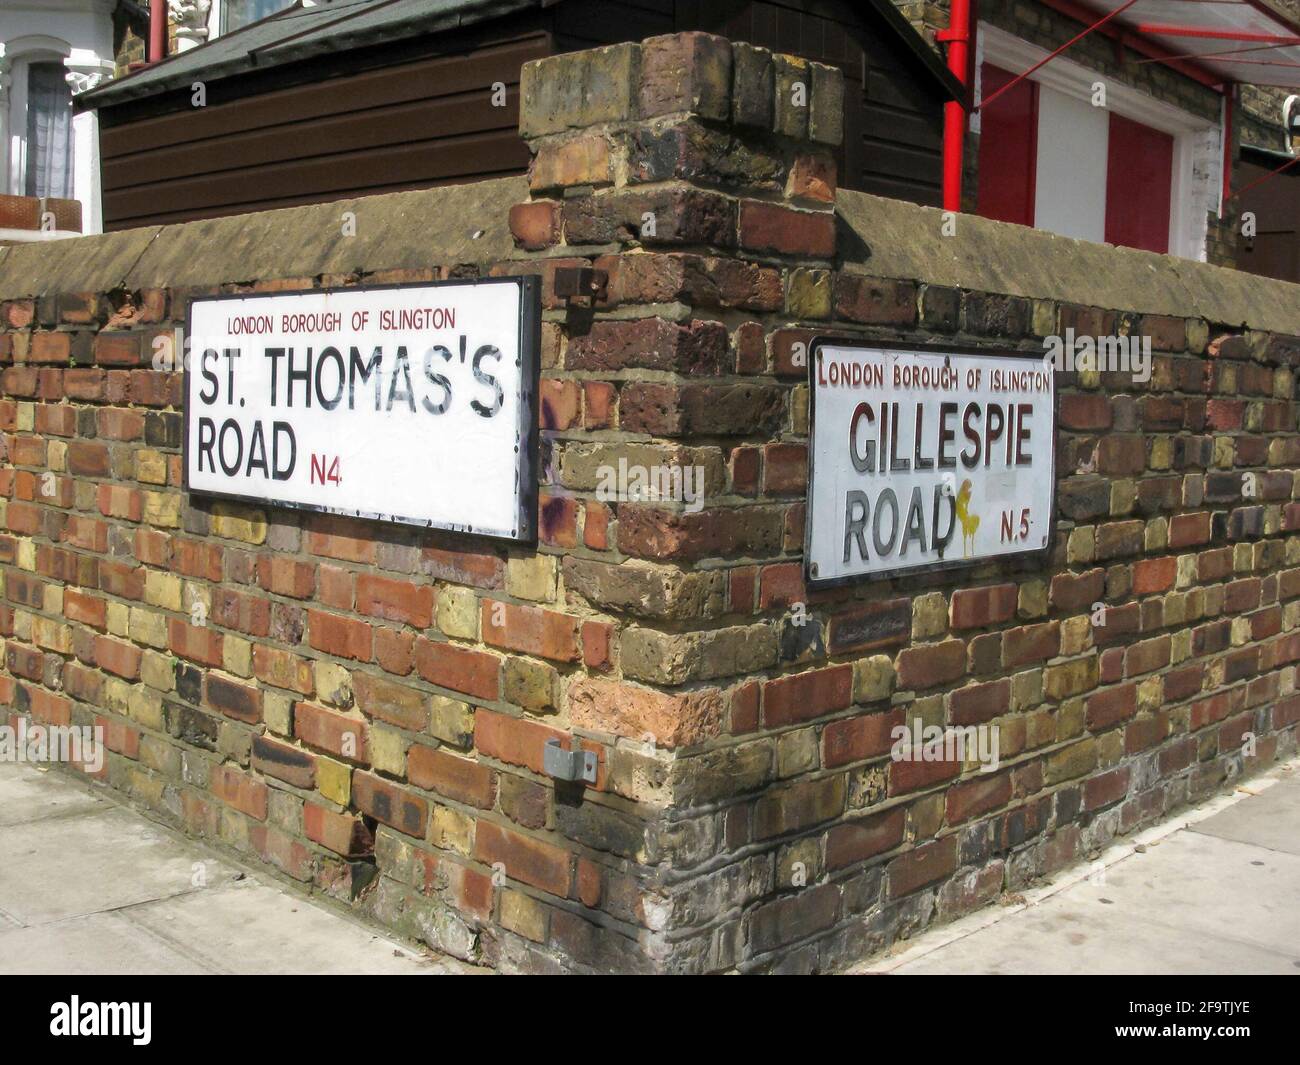 Le indicazioni per la strada di Londra sulle mura di mattoni per St.Tomas's Road e Gillespie Road, Highbury, London Borough of Islington, N4 e N5 a partire dal 2012 Foto Stock